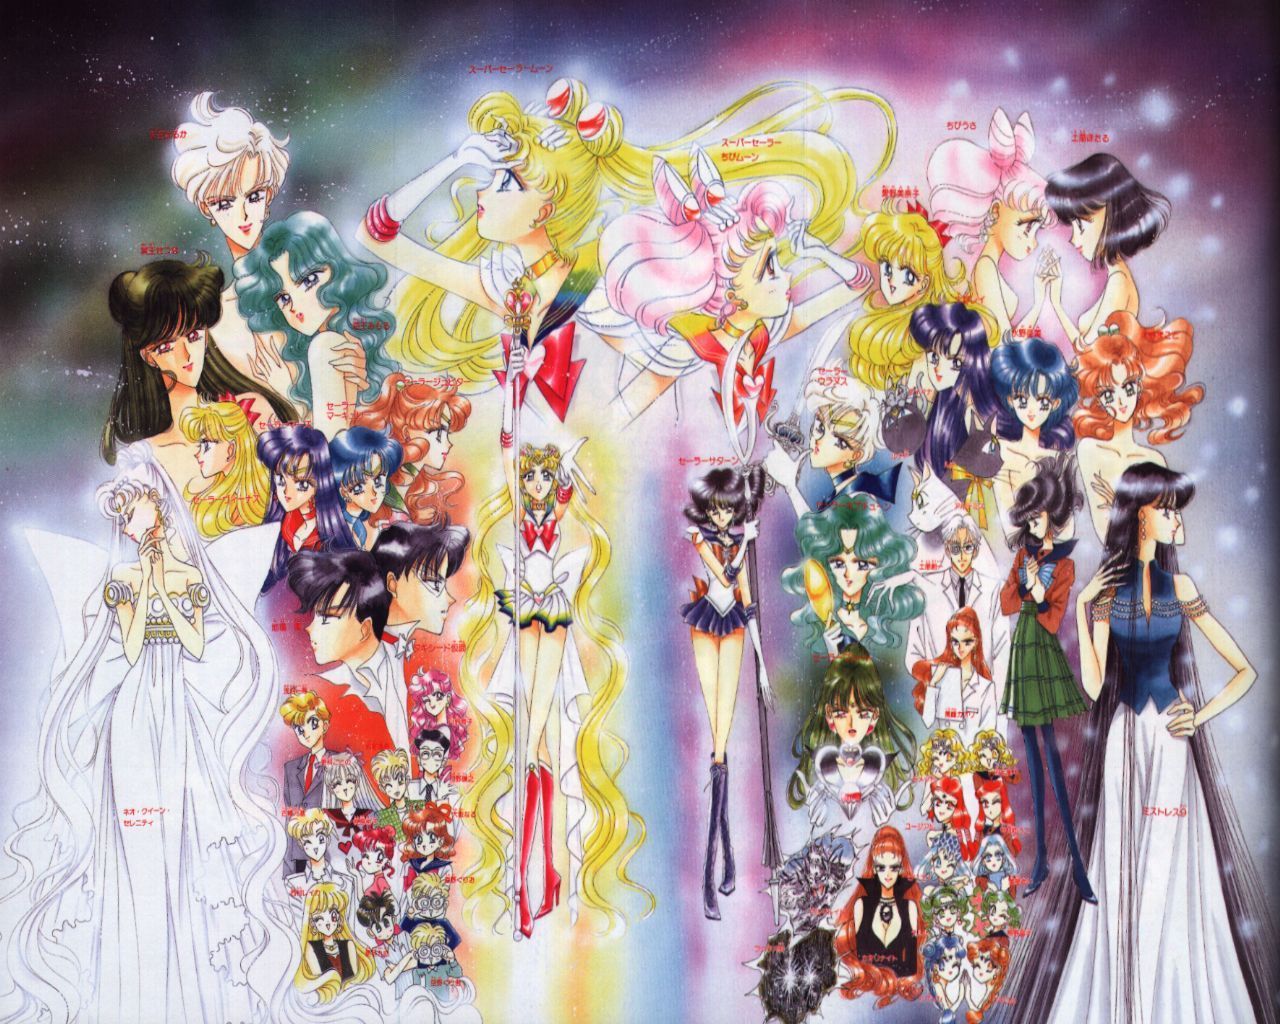 http://images2.fanpop.com/image/photos/8900000/Sailor-Moon-Artbook-sailor-moon-8934924-1280-1024.jpg